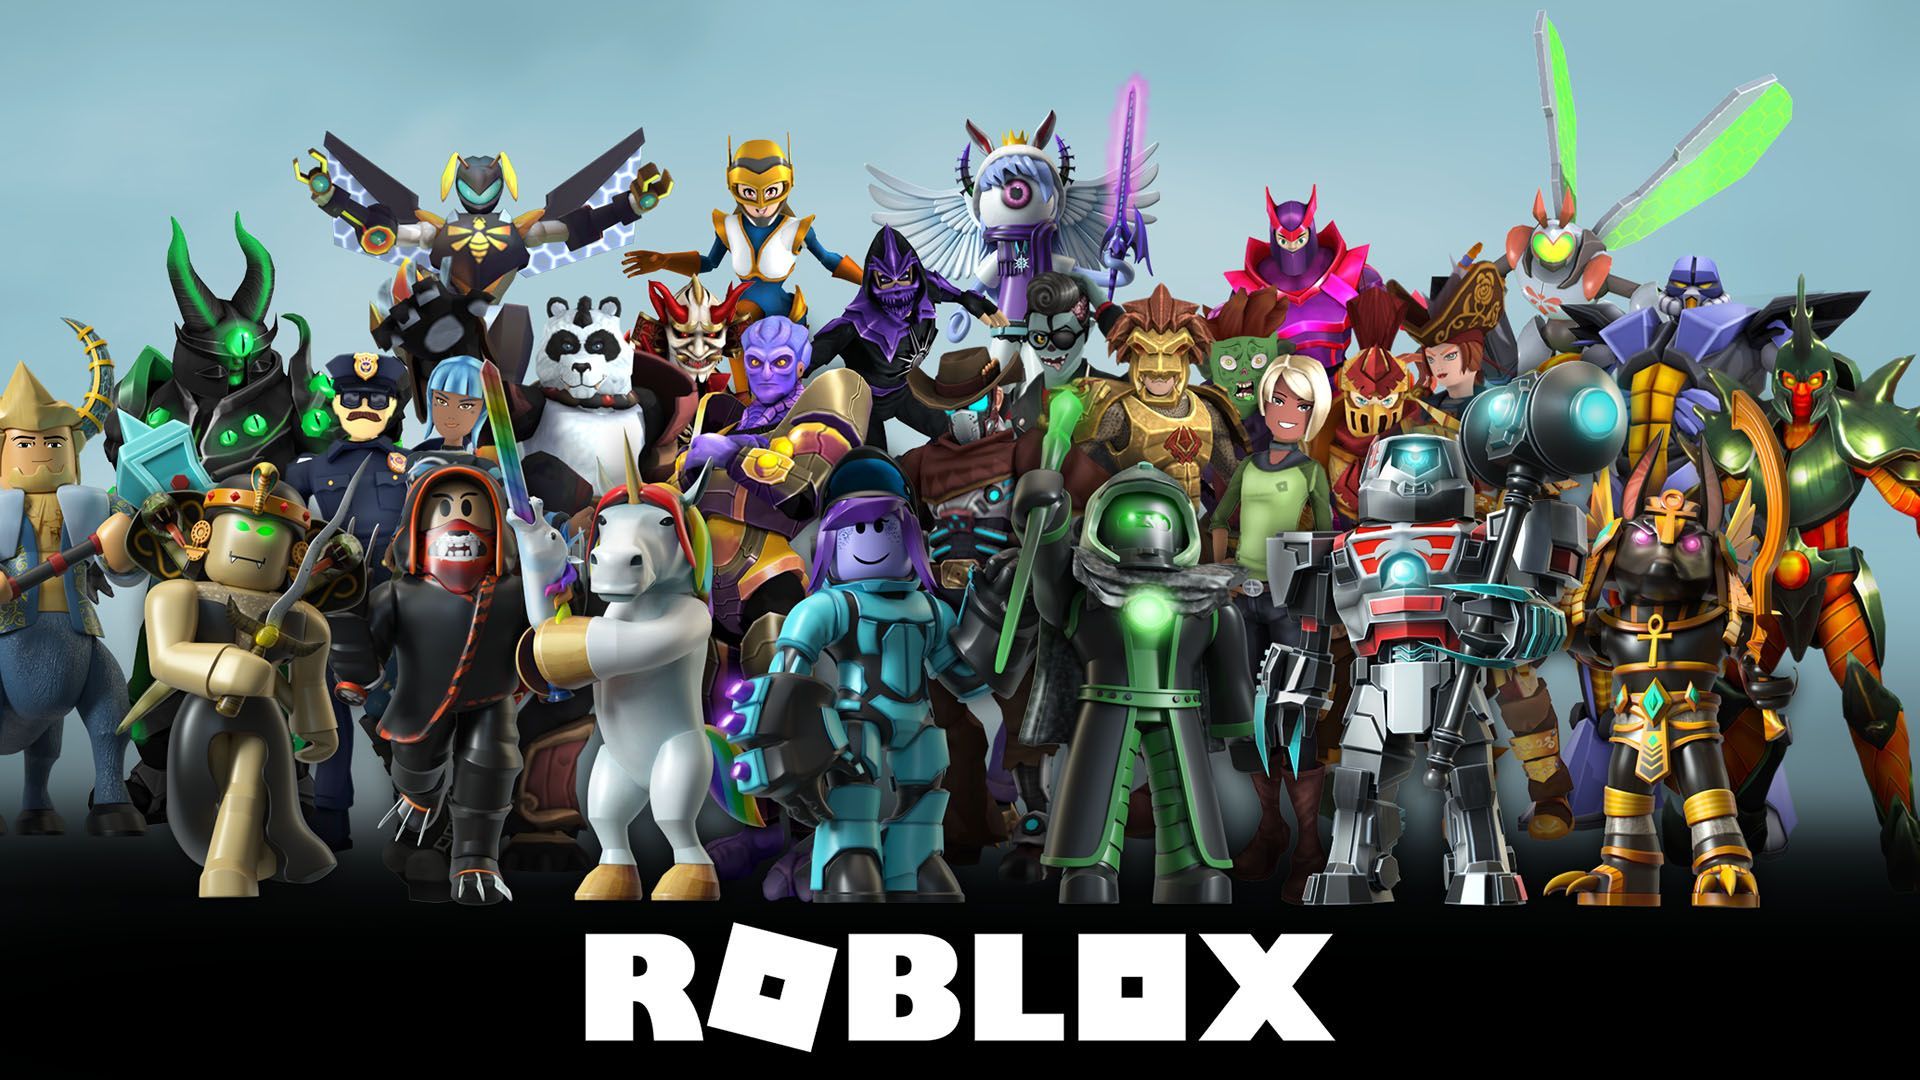 Hình nền Roblox: Roblox là một trong những trò chơi được yêu thích nhất hiện nay. Và nếu bạn là fan của Roblox, hãy xem ngay hình ảnh nền của trò chơi này. Với các nhân vật, môi trường và sự kiện đa dạng, hình nền Roblox sẽ đem tới cho bạn cảm giác phấn khích và hào hứng mỗi khi mở máy tính lên. Bạn hoàn toàn có thể tùy chỉnh hình nền theo phong cách riêng của mình và phát triển thêm trò chơi theo sở thích.